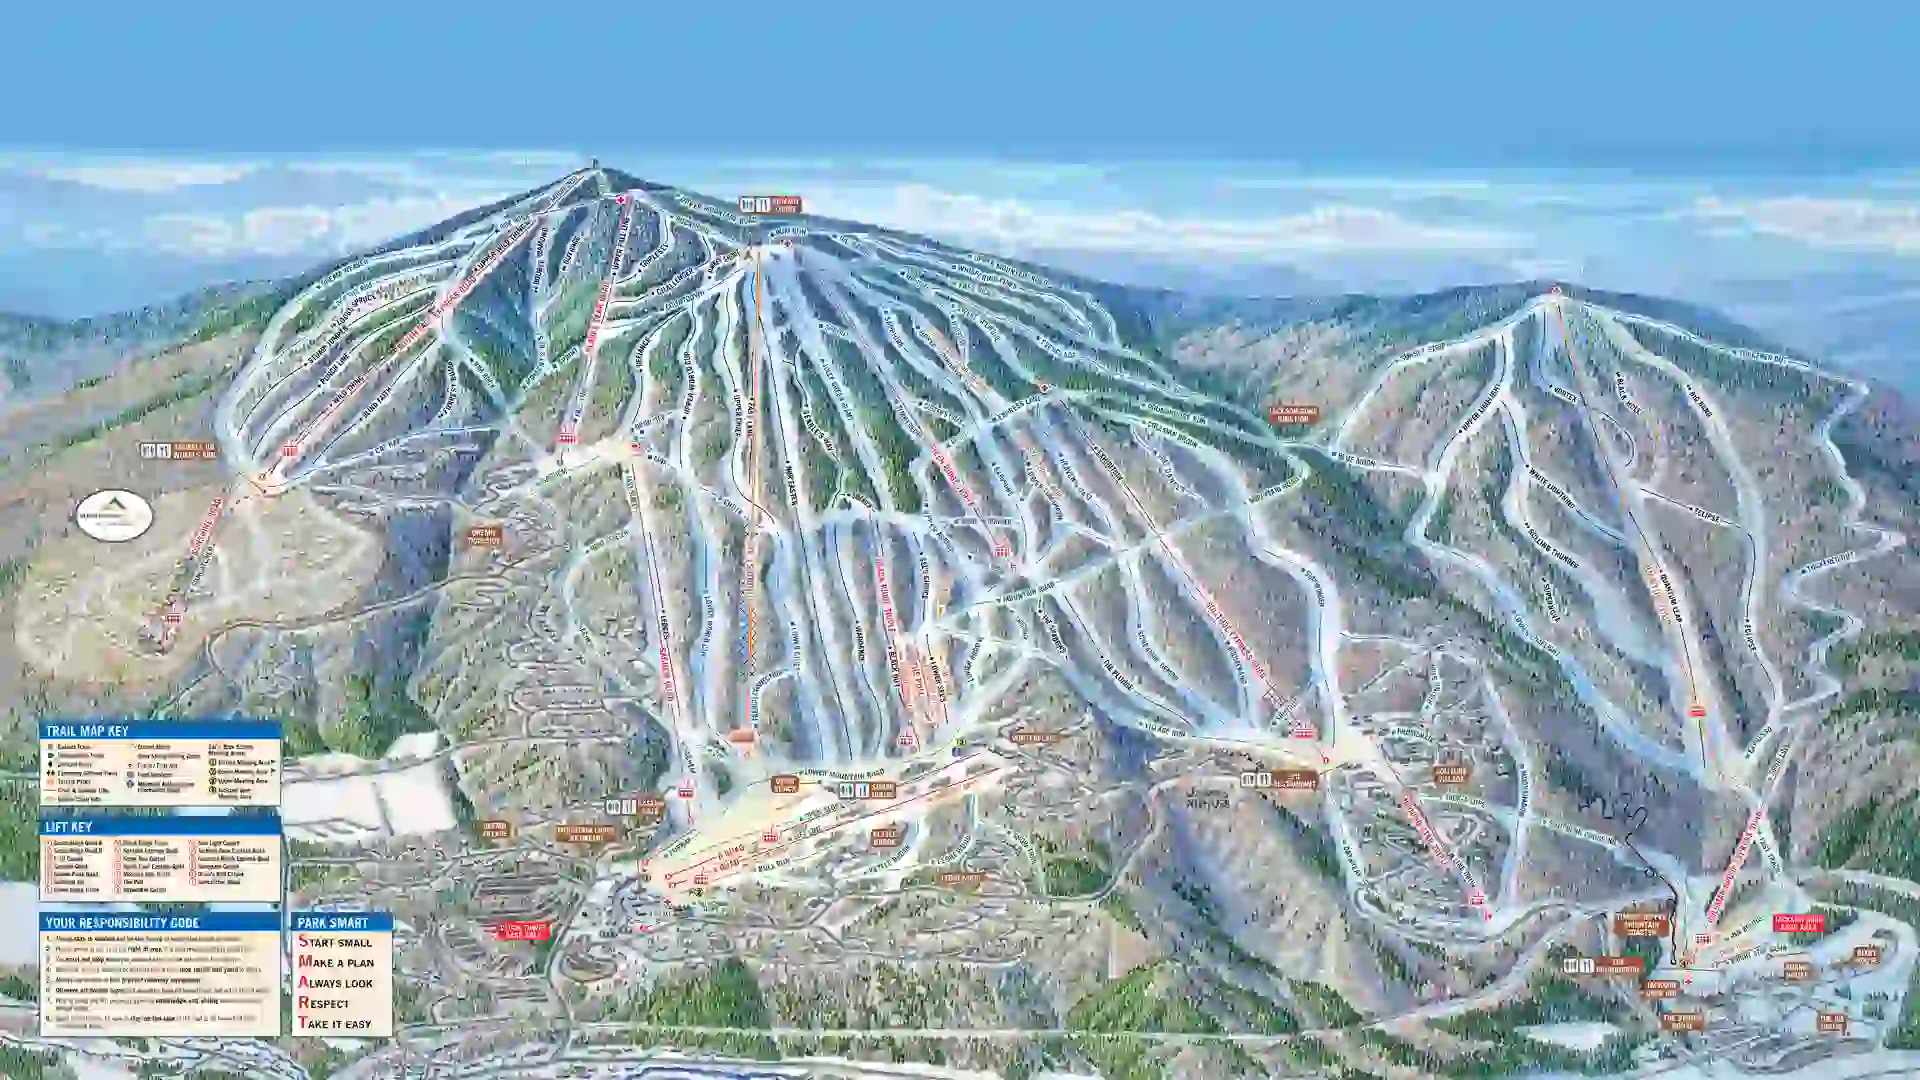 Okemo ski terrain map is shown in the comparison article of Okemo vs Killington